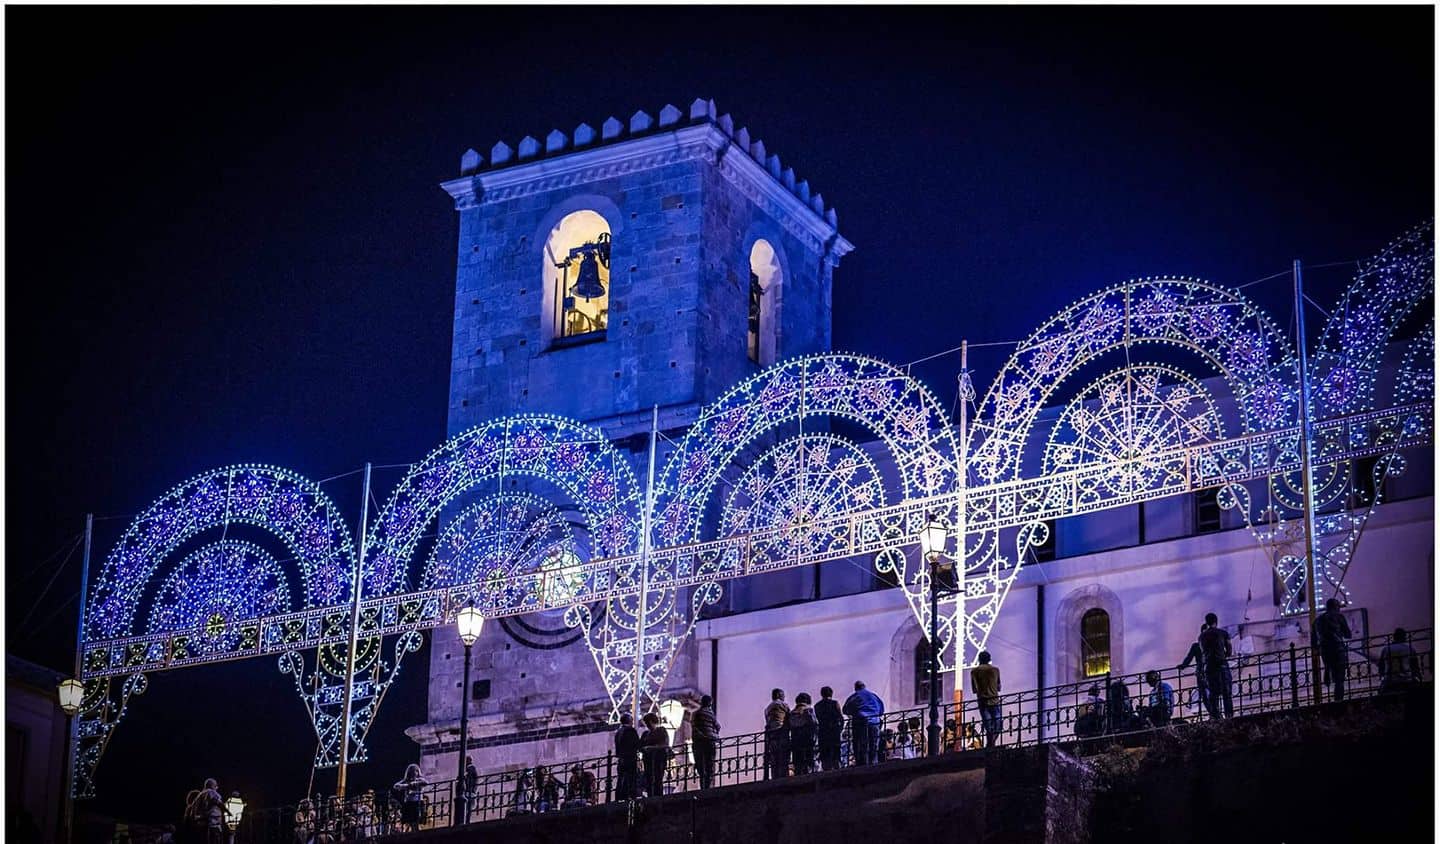 Castroreale: Piazza delle Aquile under the effect of the lights of the luminaries  | Santi De Palma - e-borghi Community